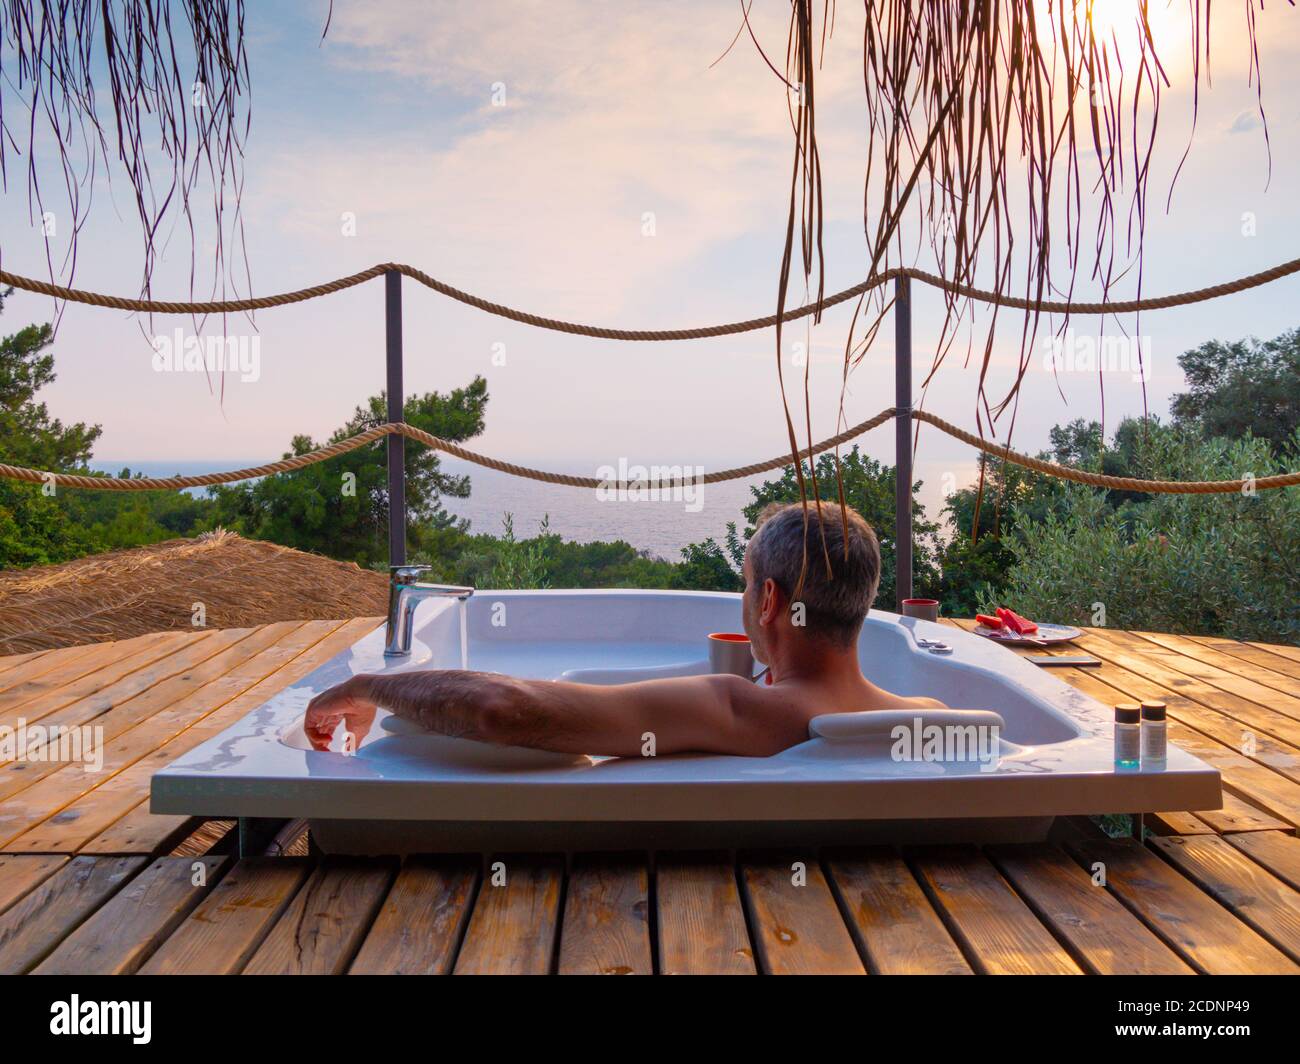 Ein hübscher erwachsener Mann liegt gekühlt in einem Whirlpool auf einem luxuriösen exotischen Spa Resort Hotelbalkon mit Meer und Sonnenuntergang. Stockfoto